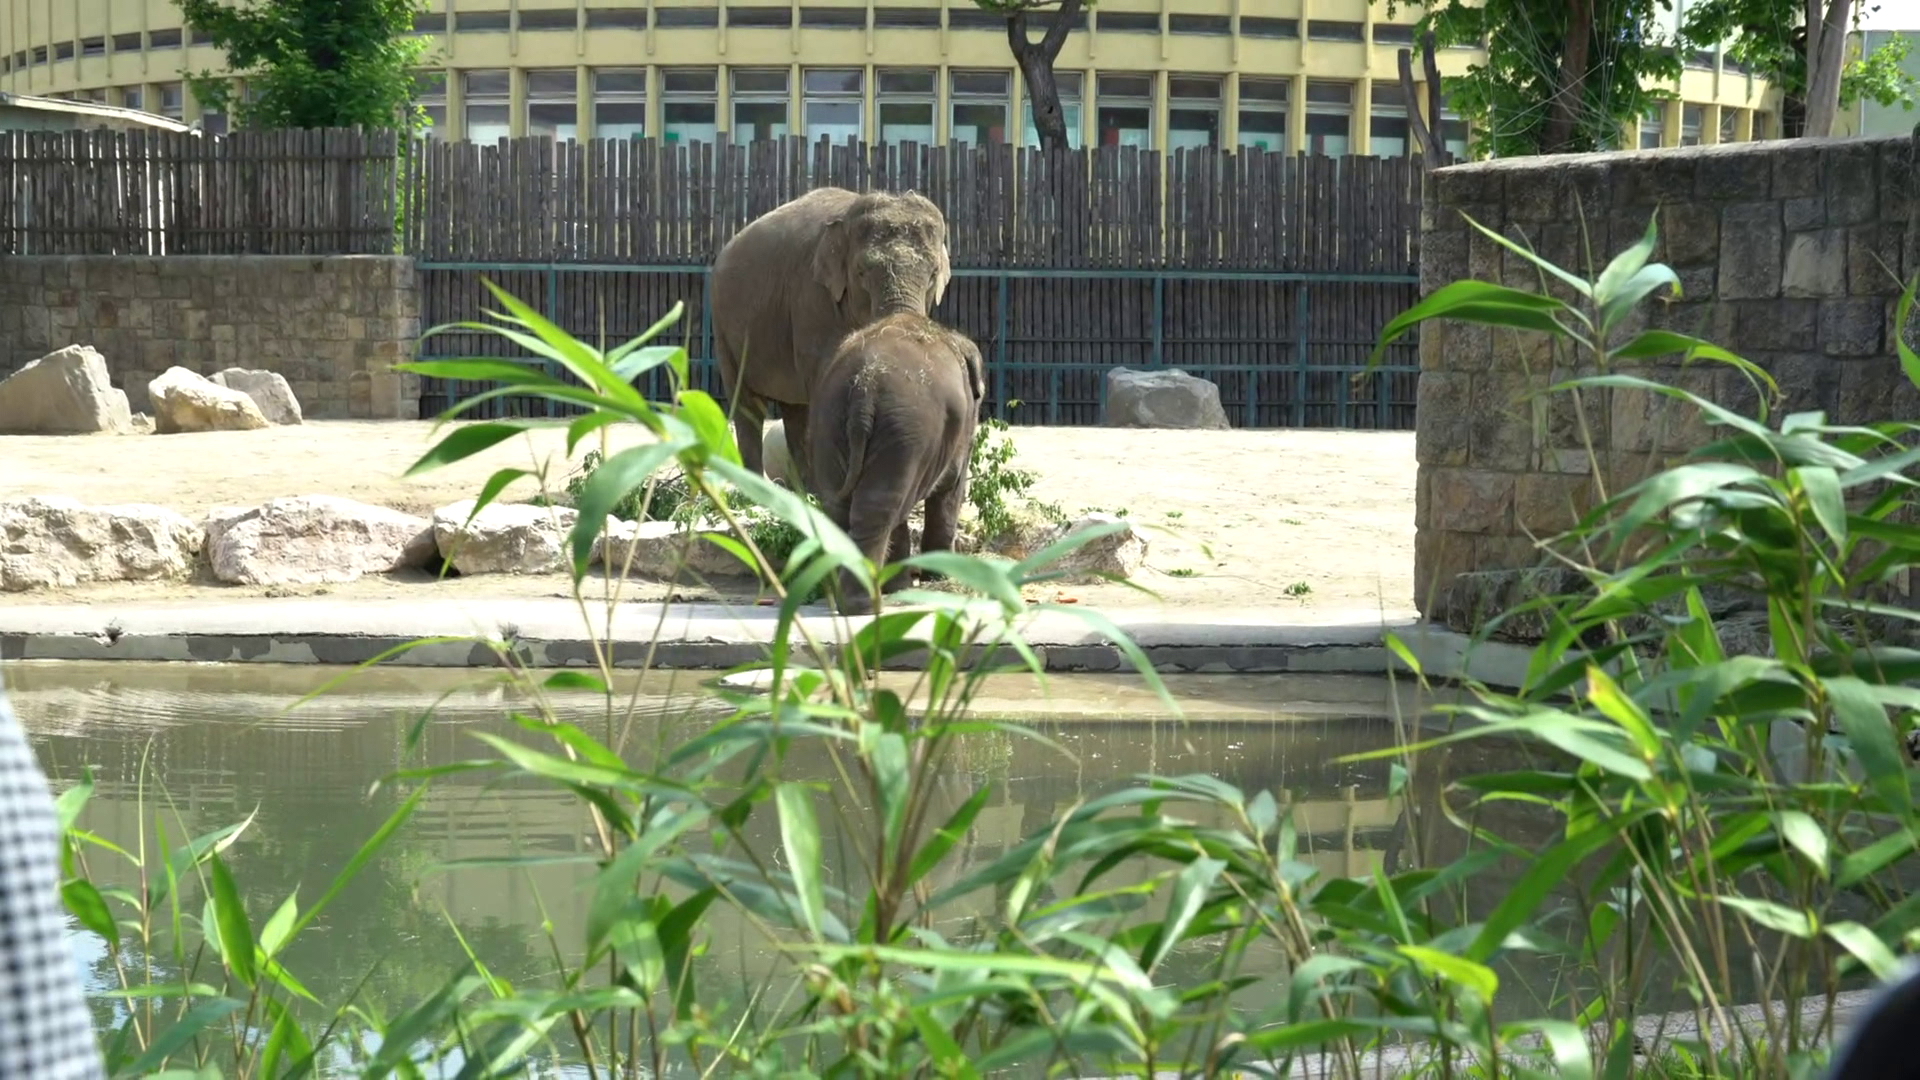 Harmadik születésnapját ünnepli Samu, az elefánt + videó